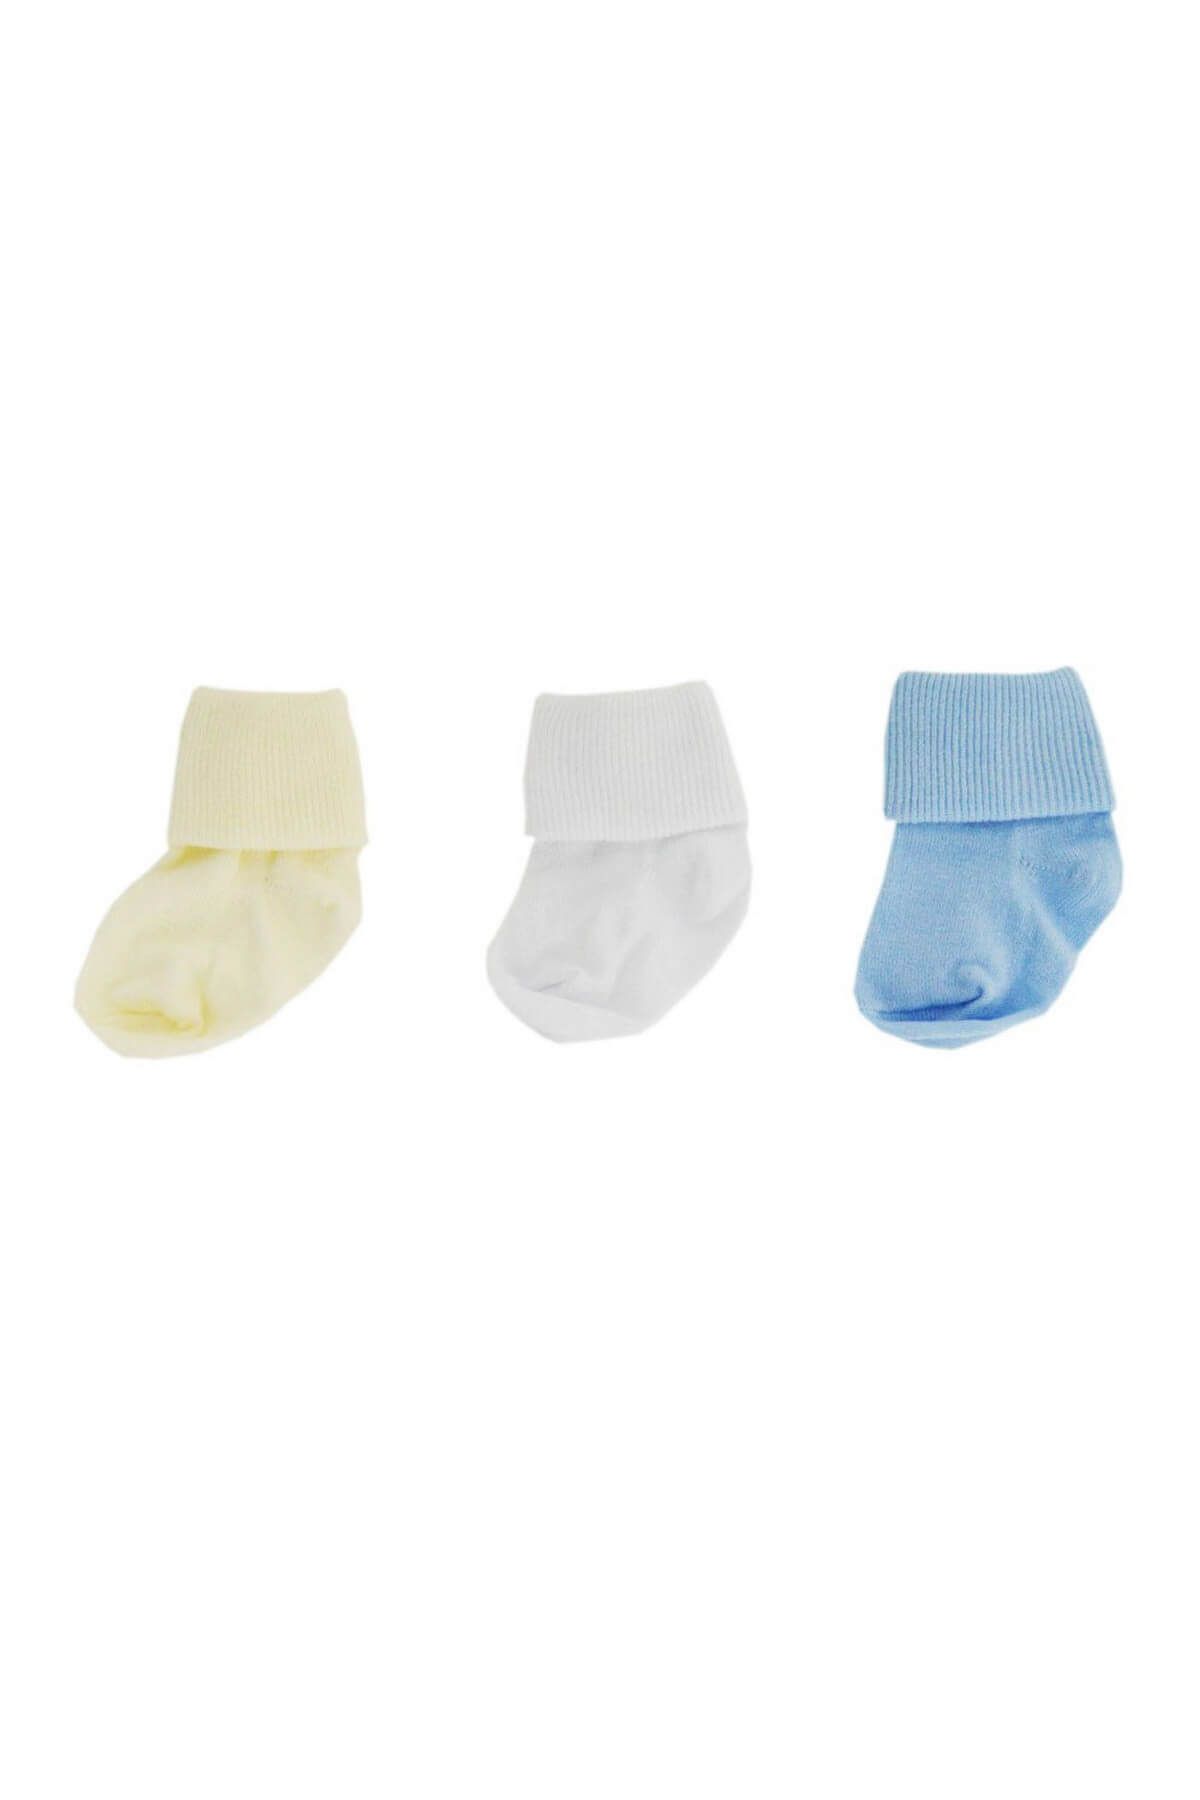 Sebi Bebe B120 3Lü Bebek Çorabı Beyaz-Mavi